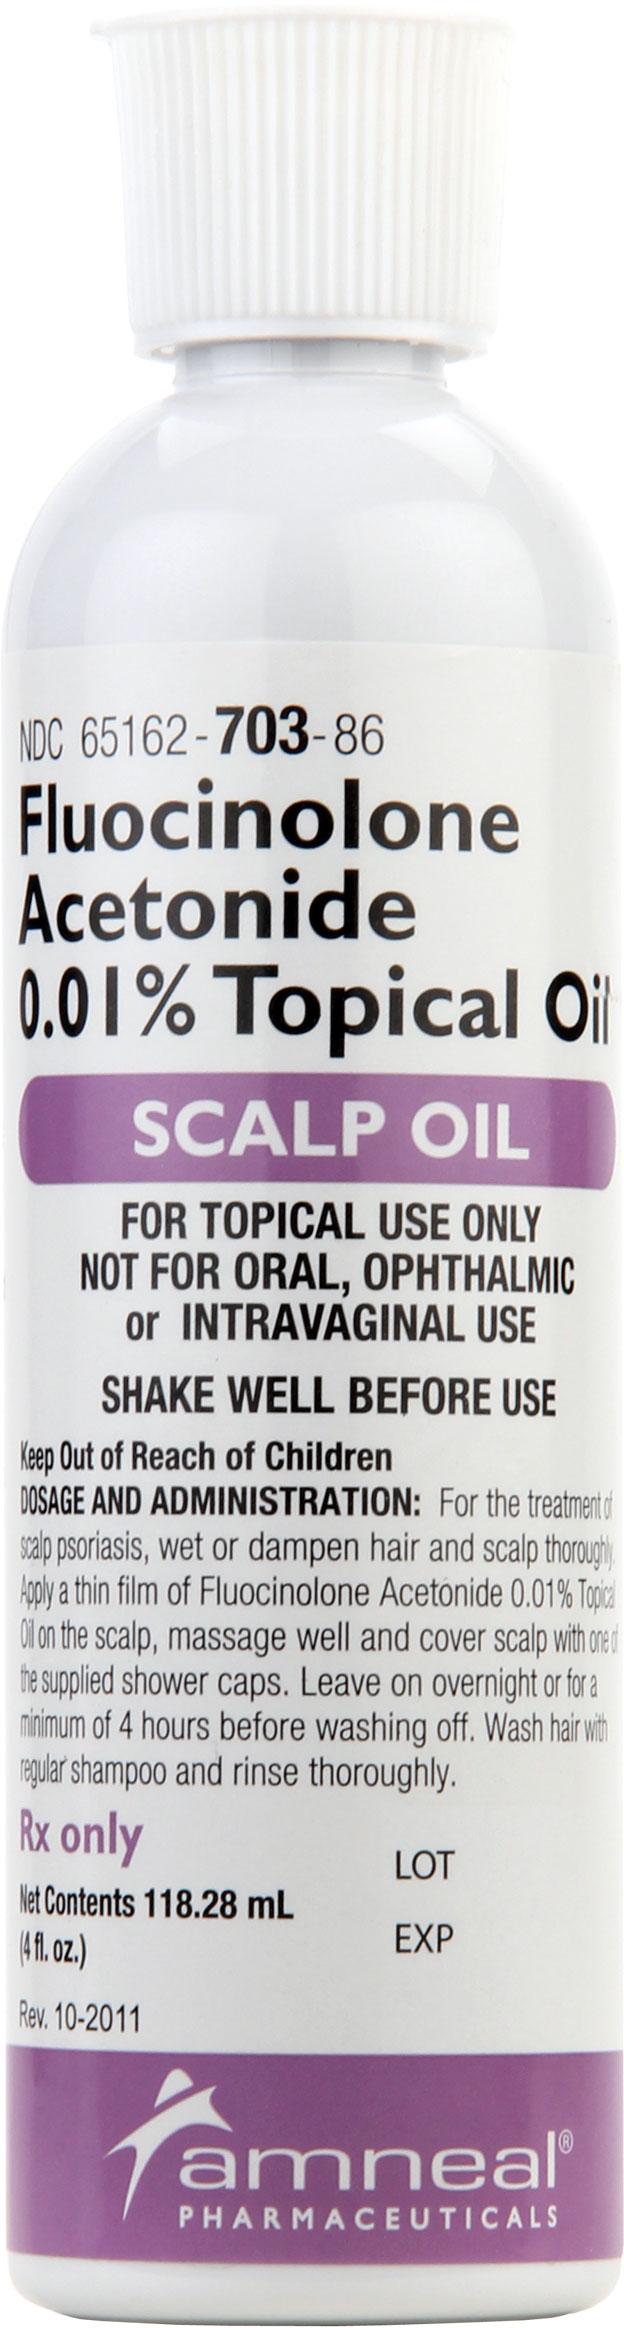 Fluocinolone Acetonide Scalp Oil